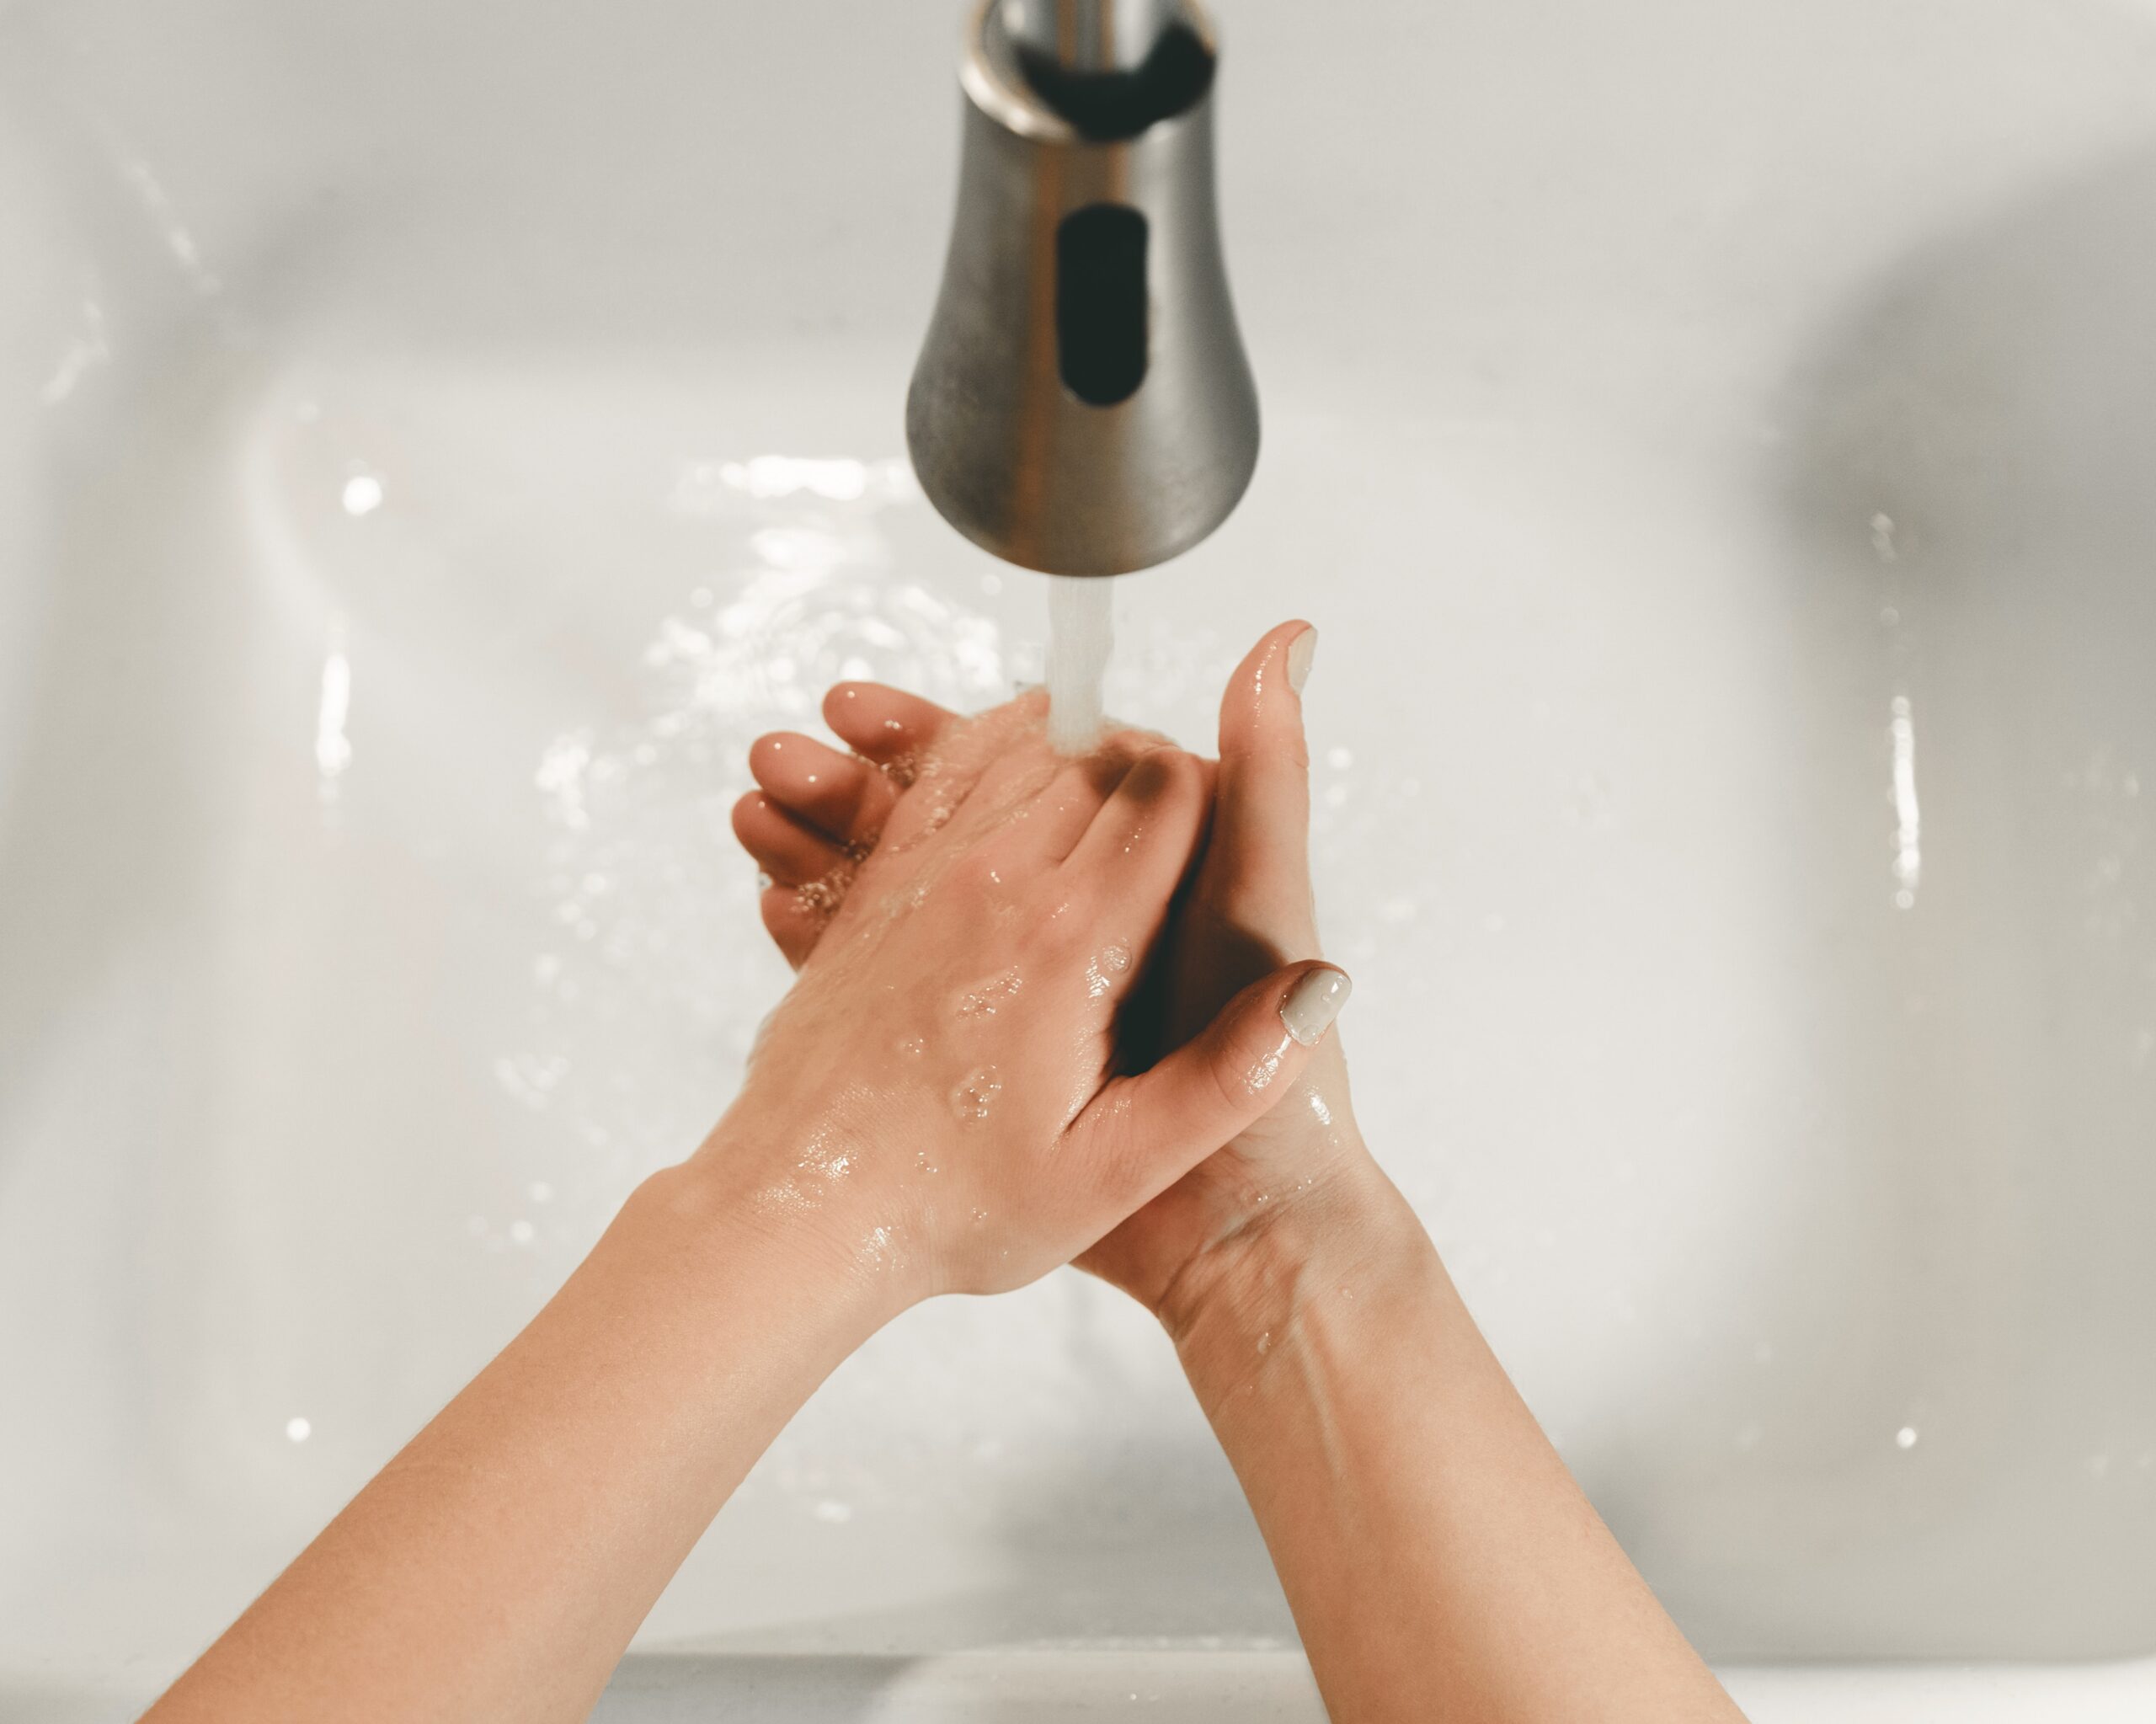 Lavarsi le mani è un gesto che salva le vite